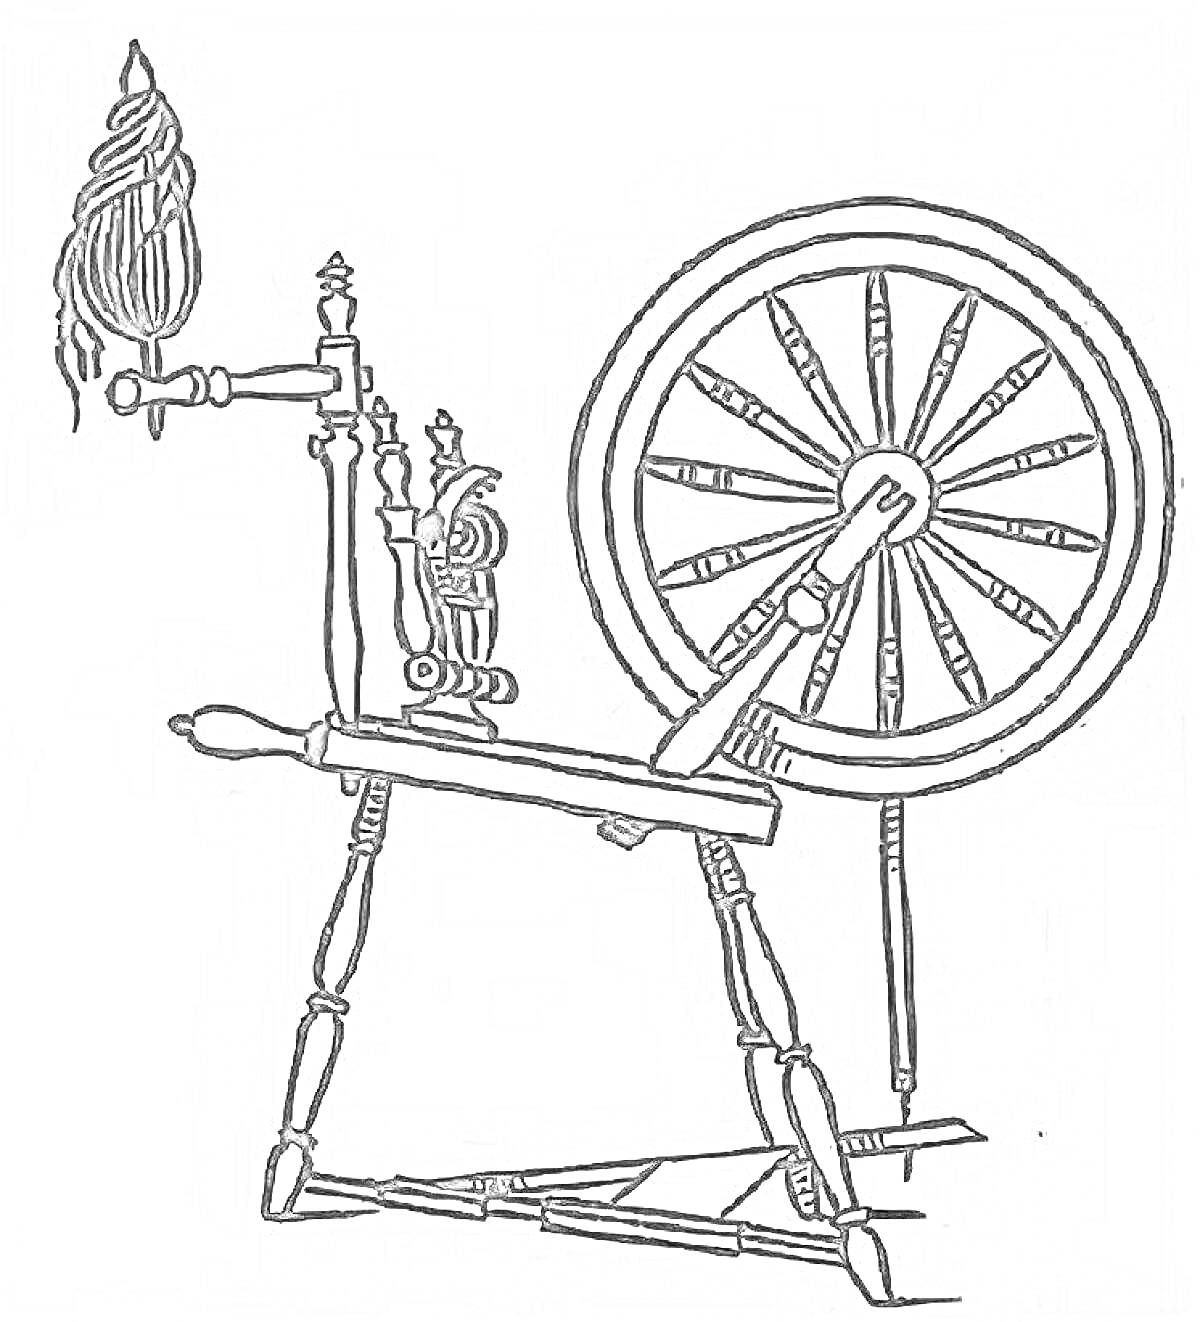 Прялка с прядильным колесом, маховиком, рукоятью и наматываемой пряжей